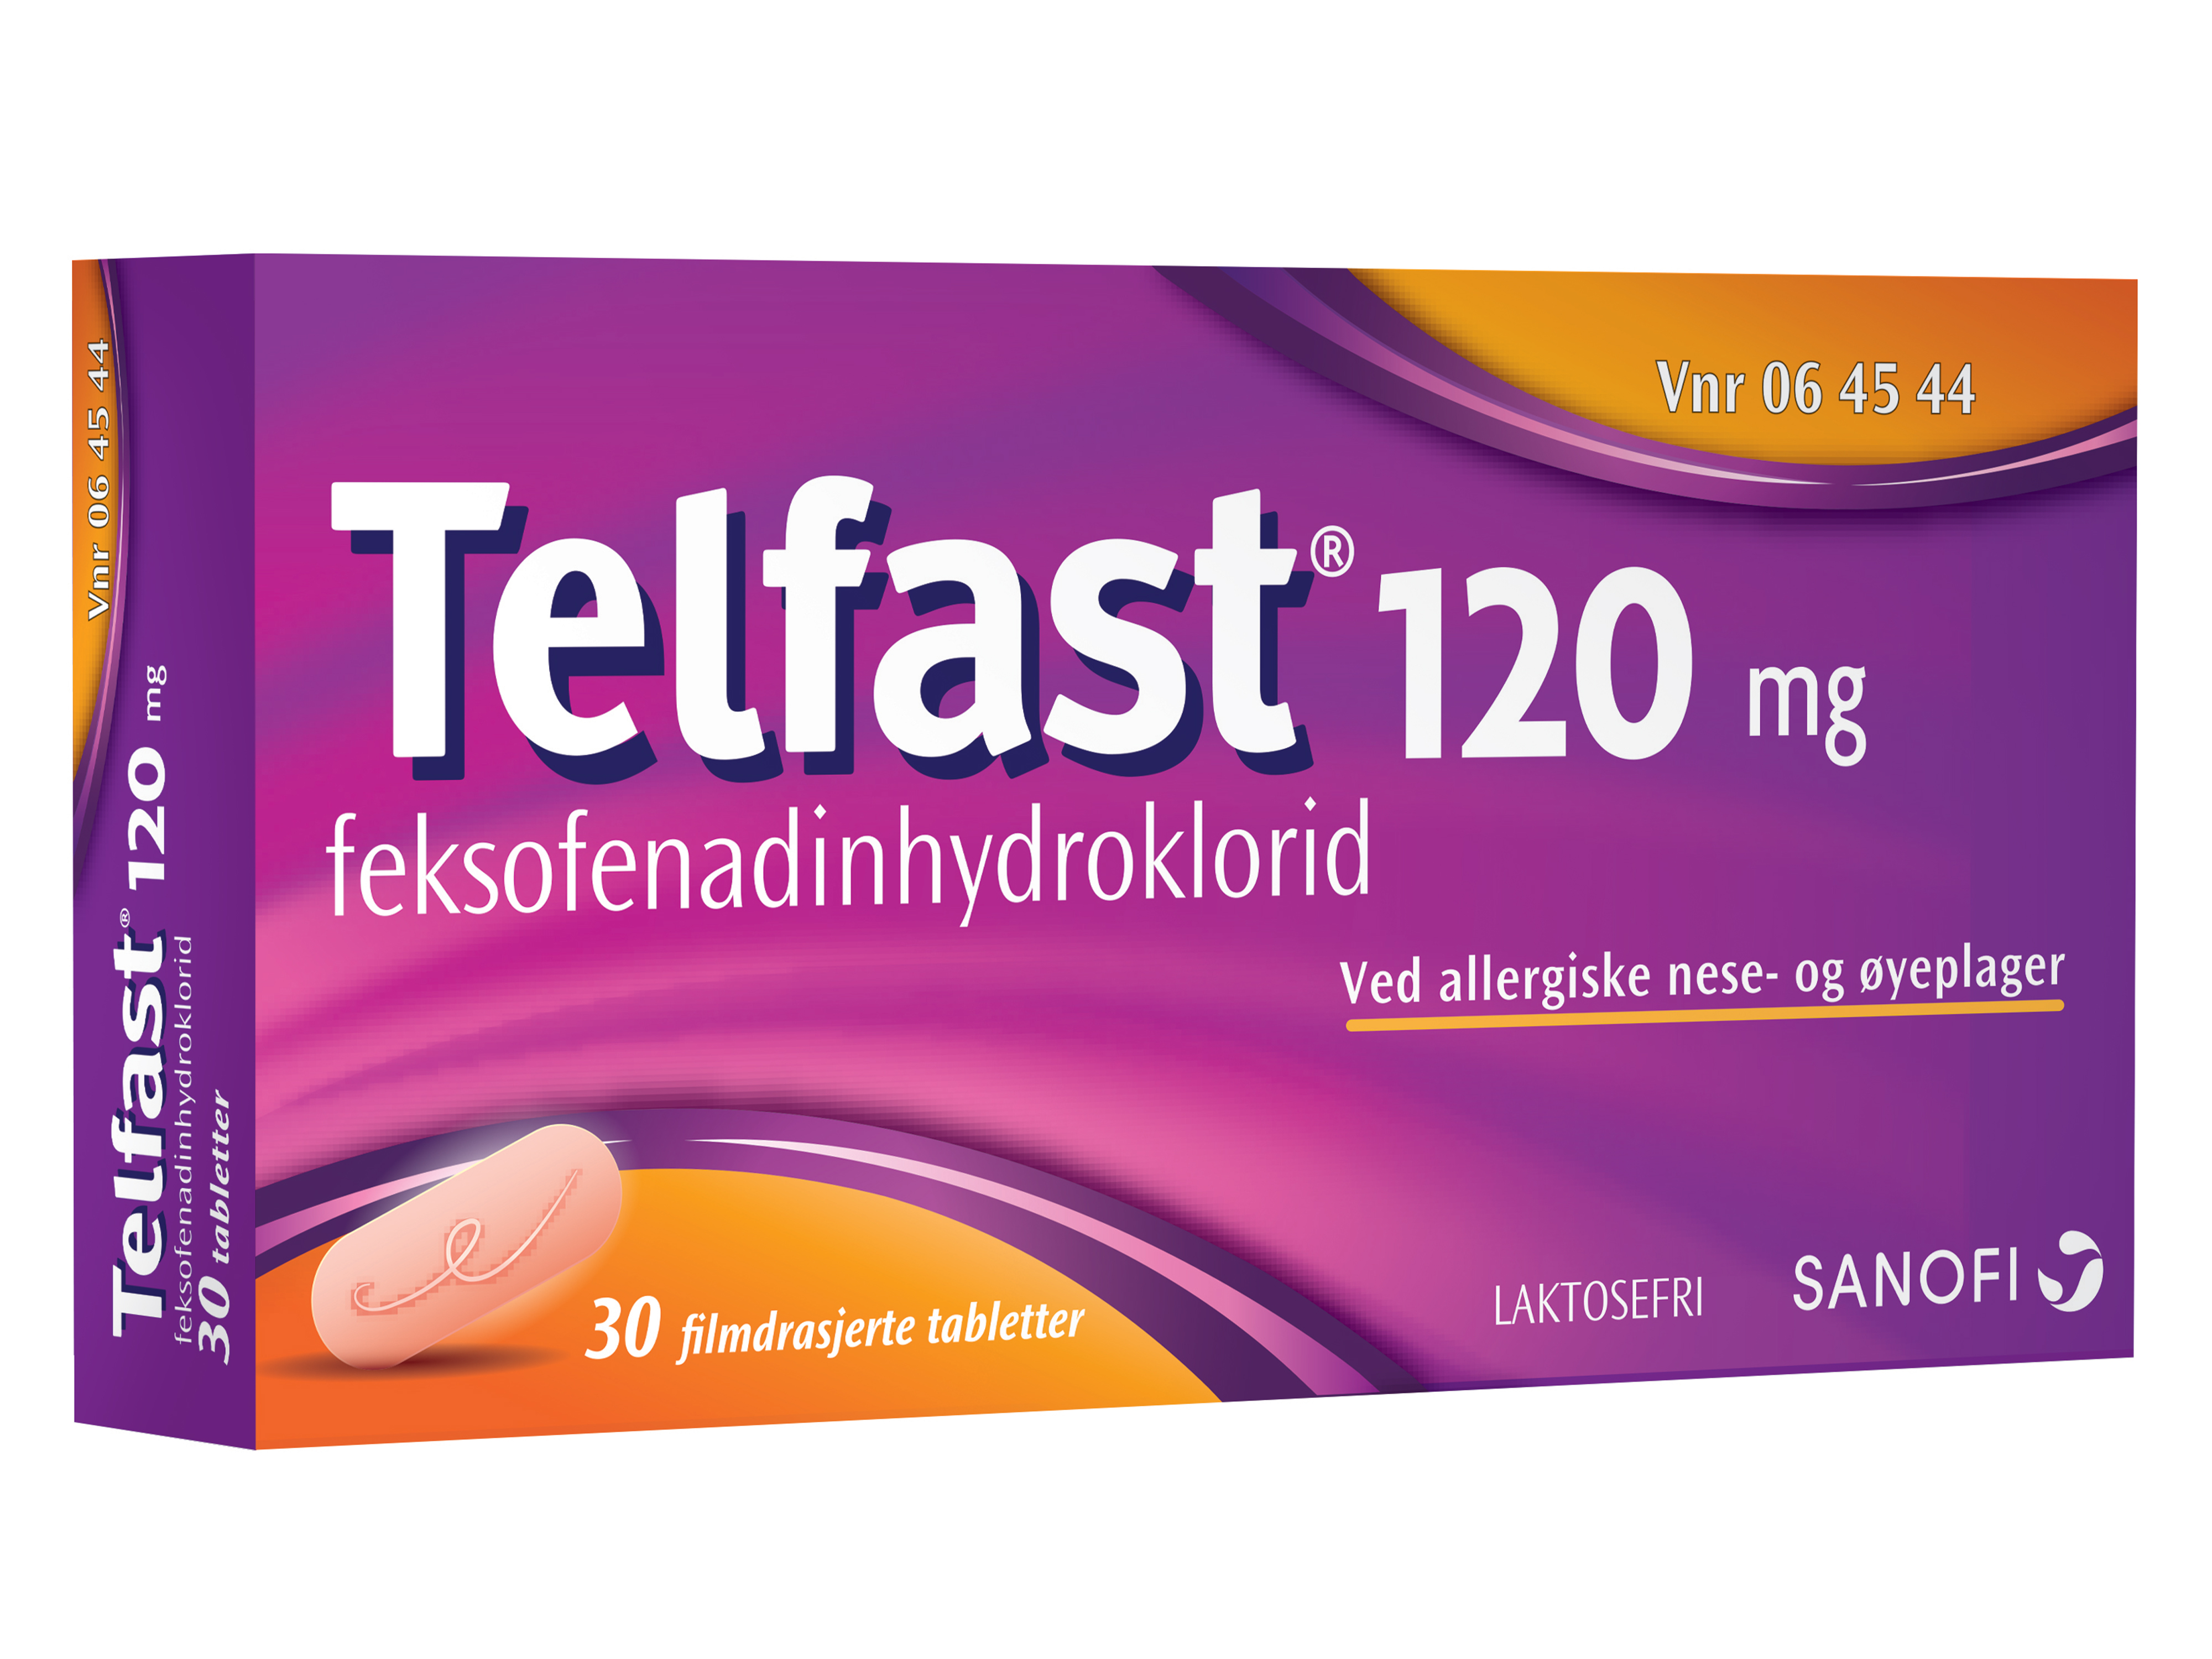 Telfast Tabletter 120 mg, 30 stk. på brett